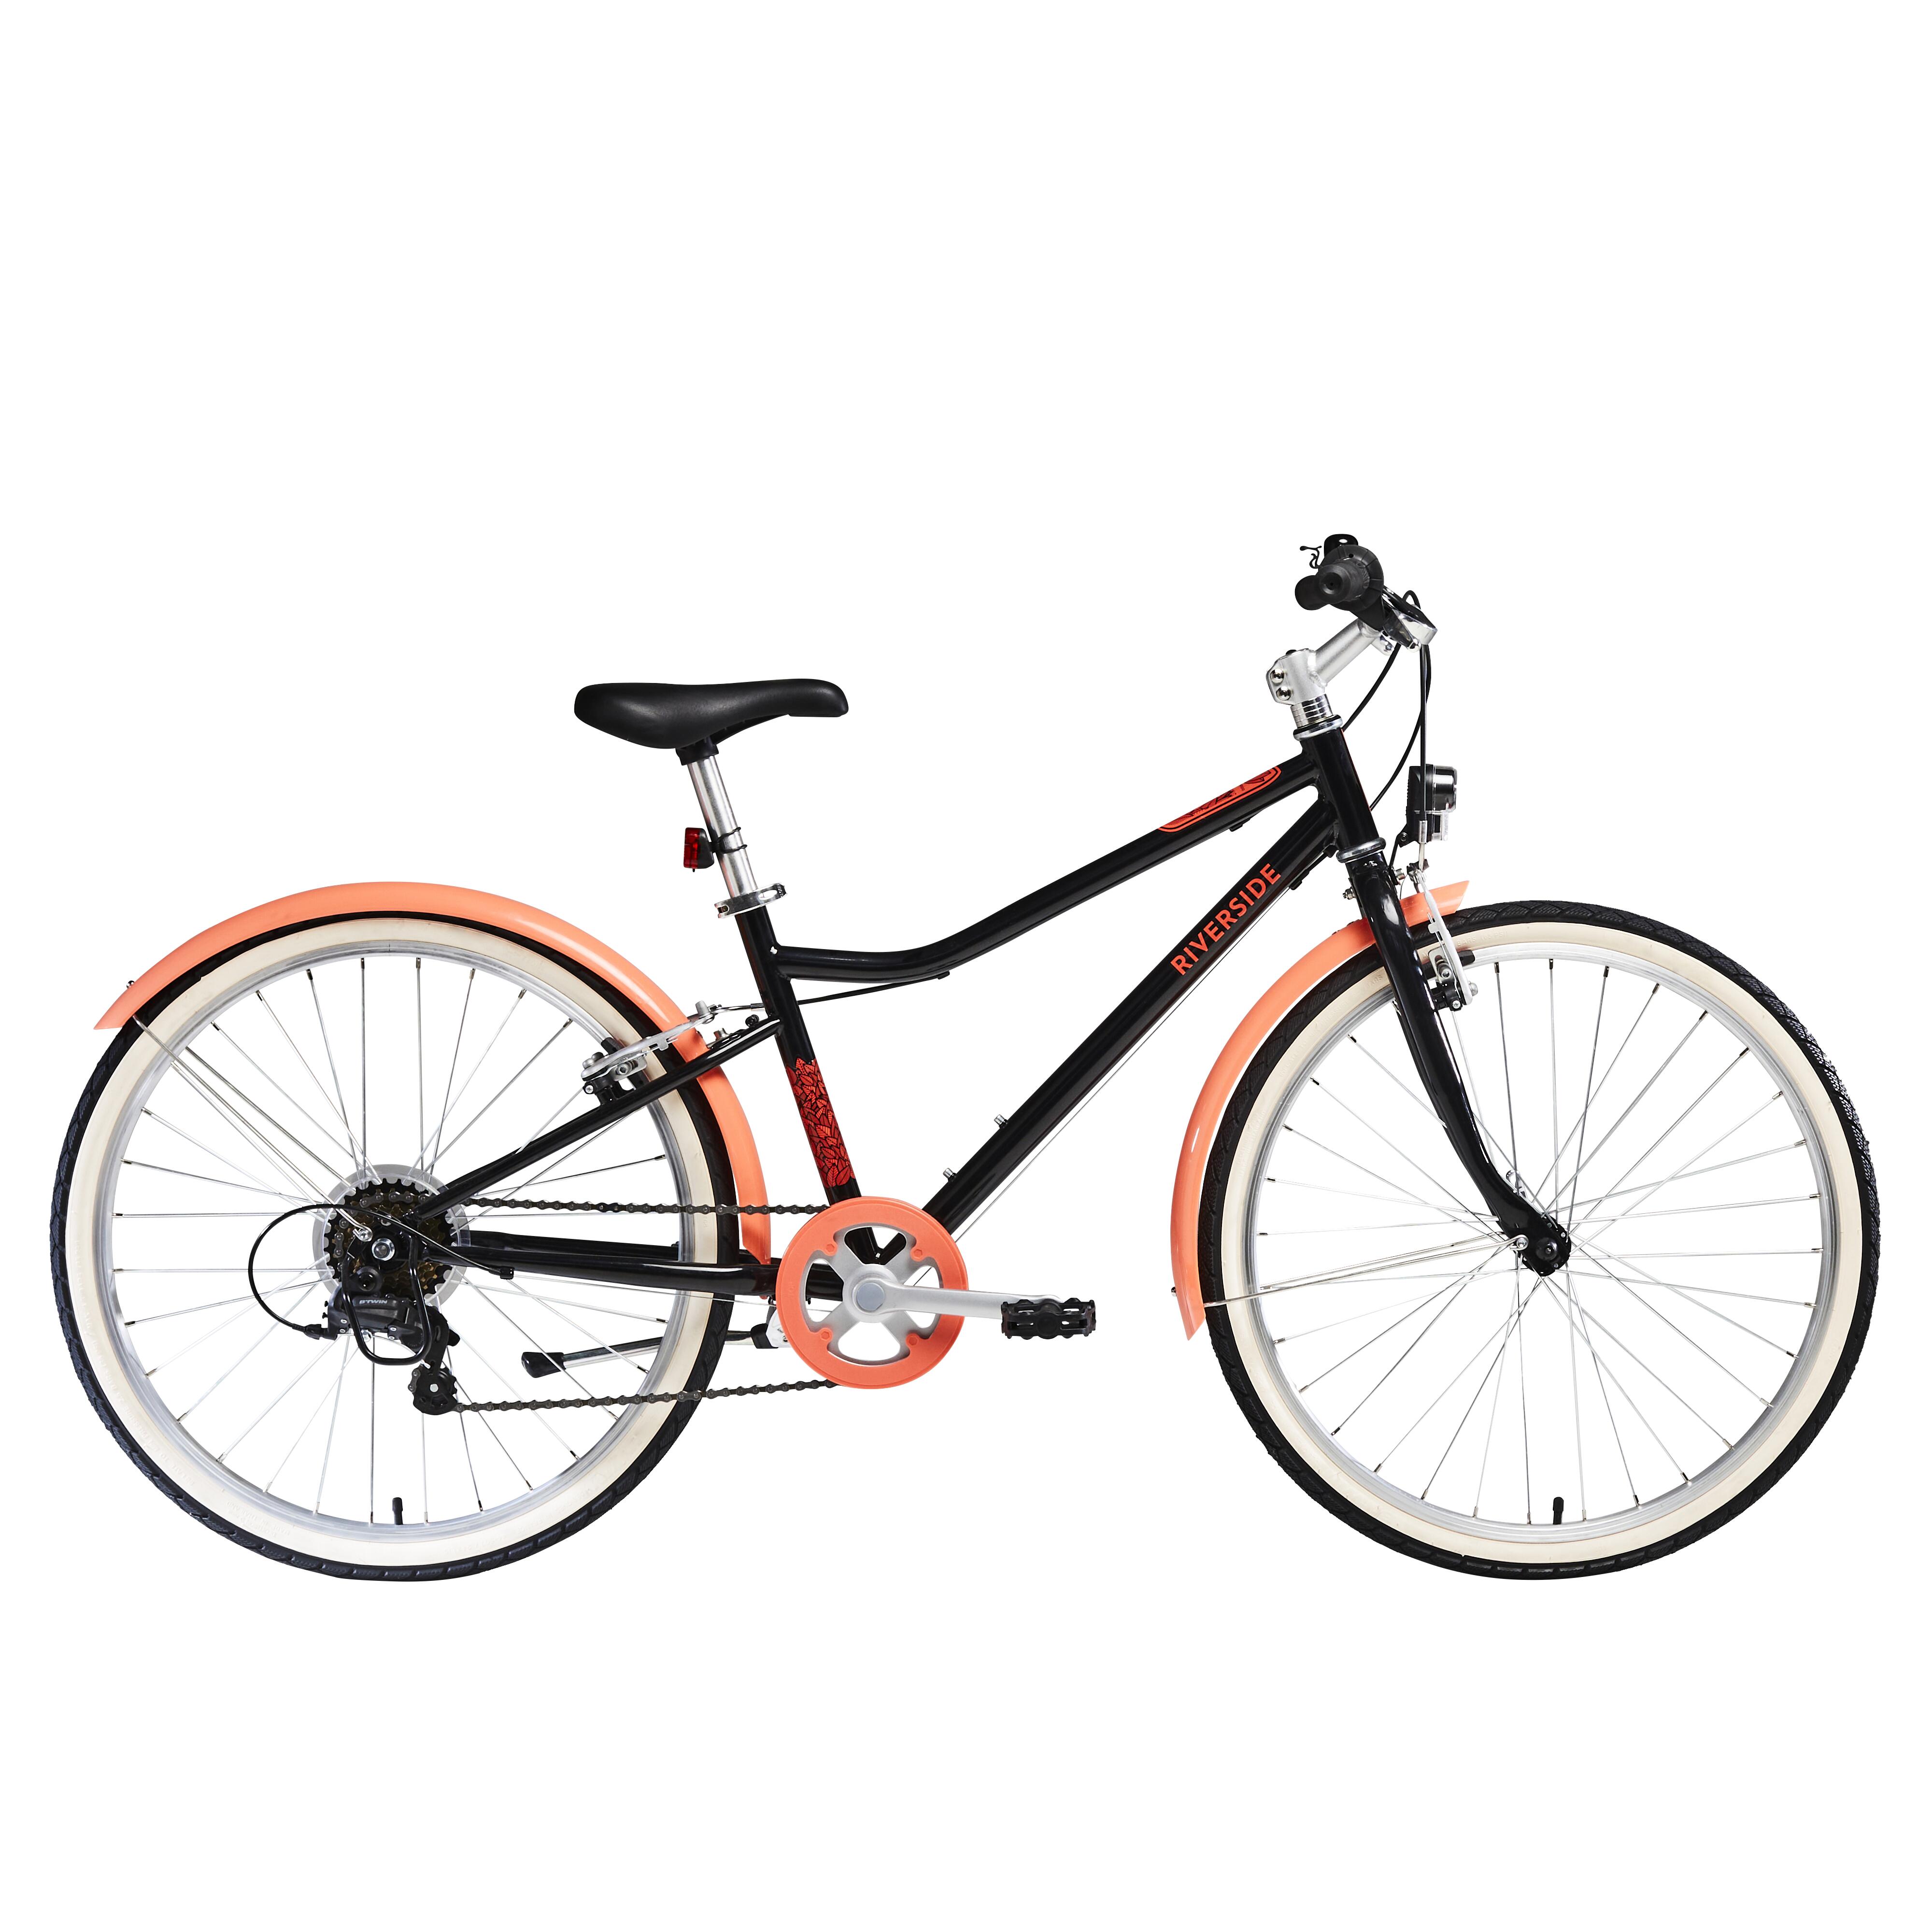 Bicicletă polivalentă Riverside 500 24” Corai Copii 9-12 ani La Oferta Online BTWIN imagine La Oferta Online